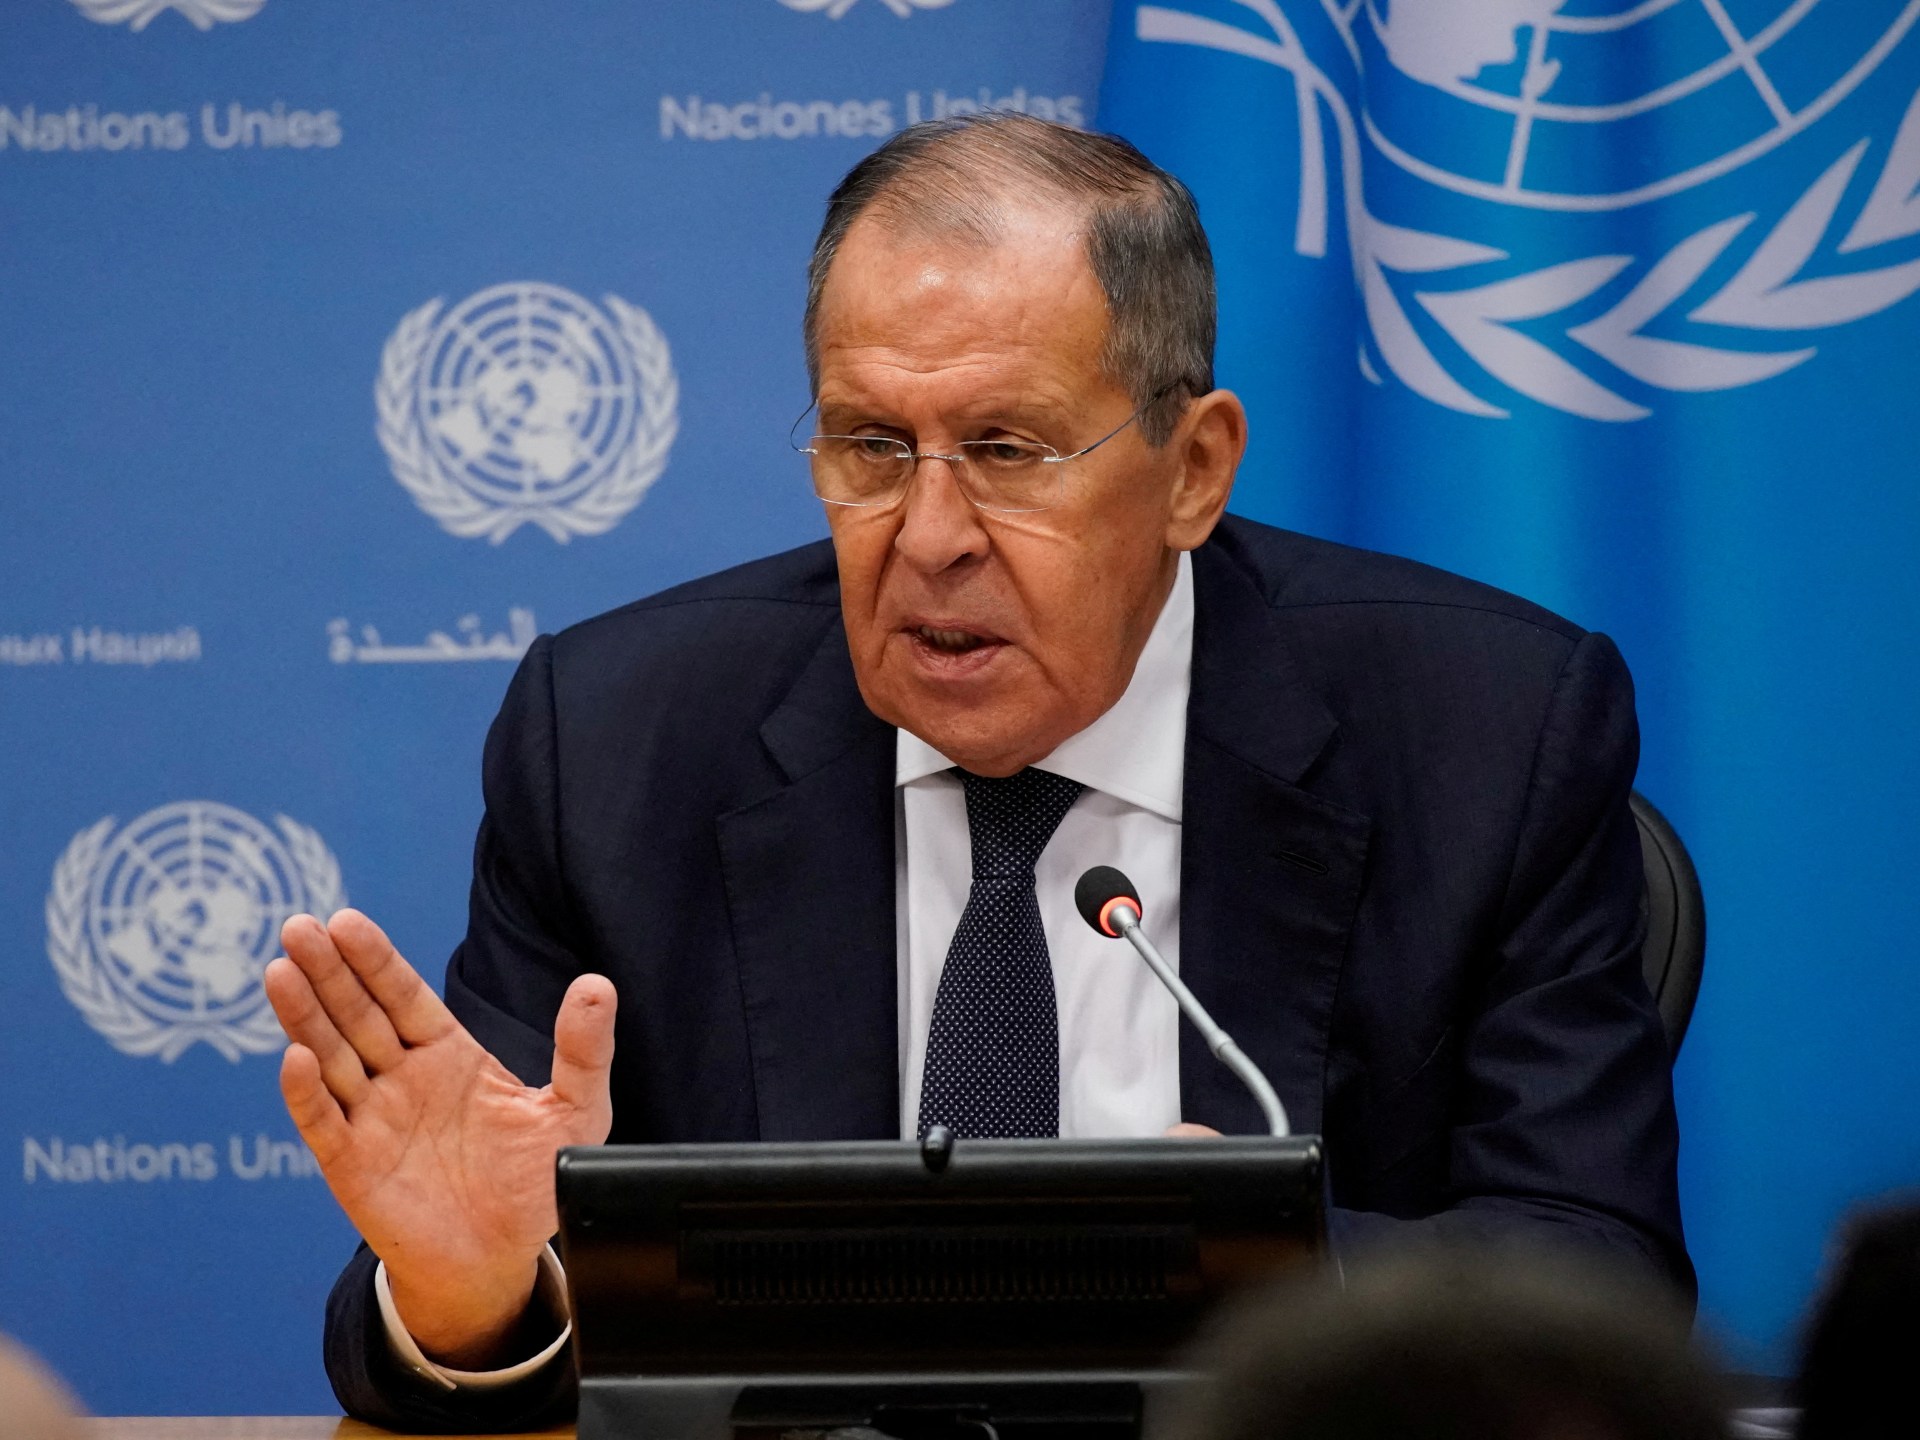 Rosyjski Ławrow odrzuca amerykańską propozycję wznowienia rozmów w sprawie broni nuklearnej  Wiadomość o wojnie rosyjsko-ukraińskiej